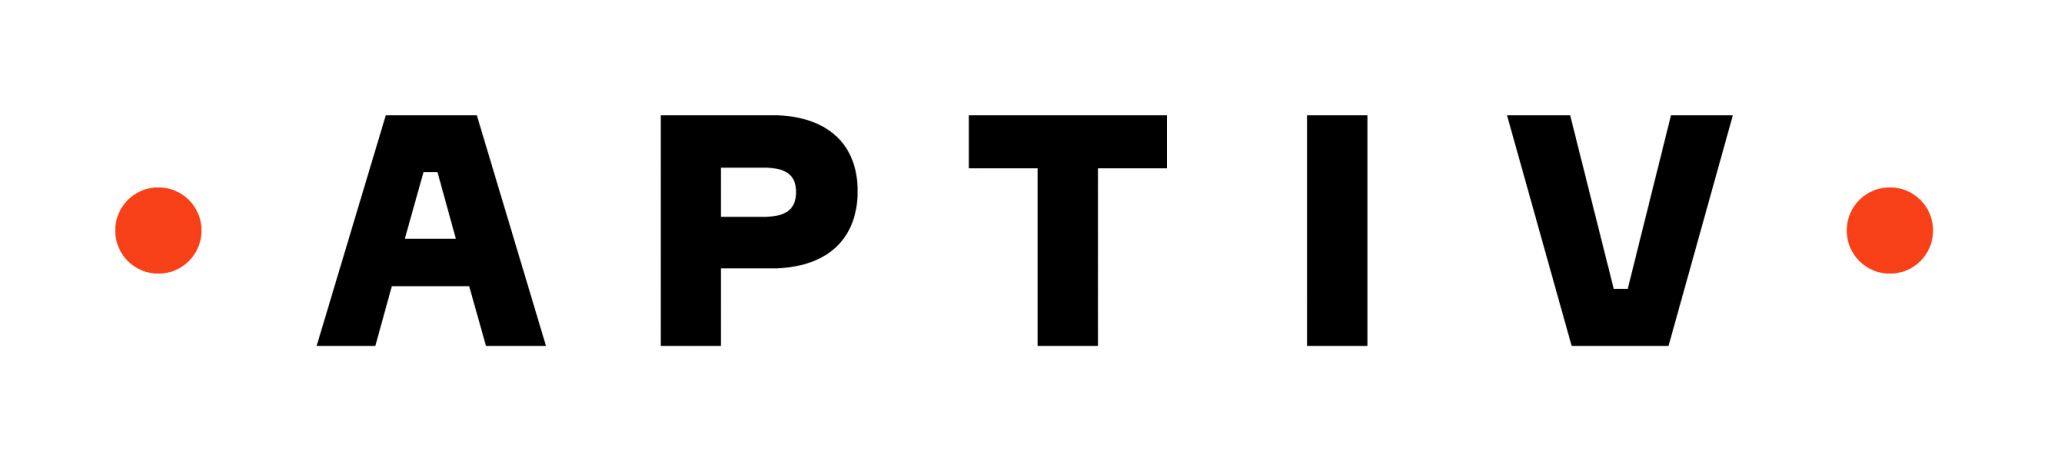 aptiv_logo